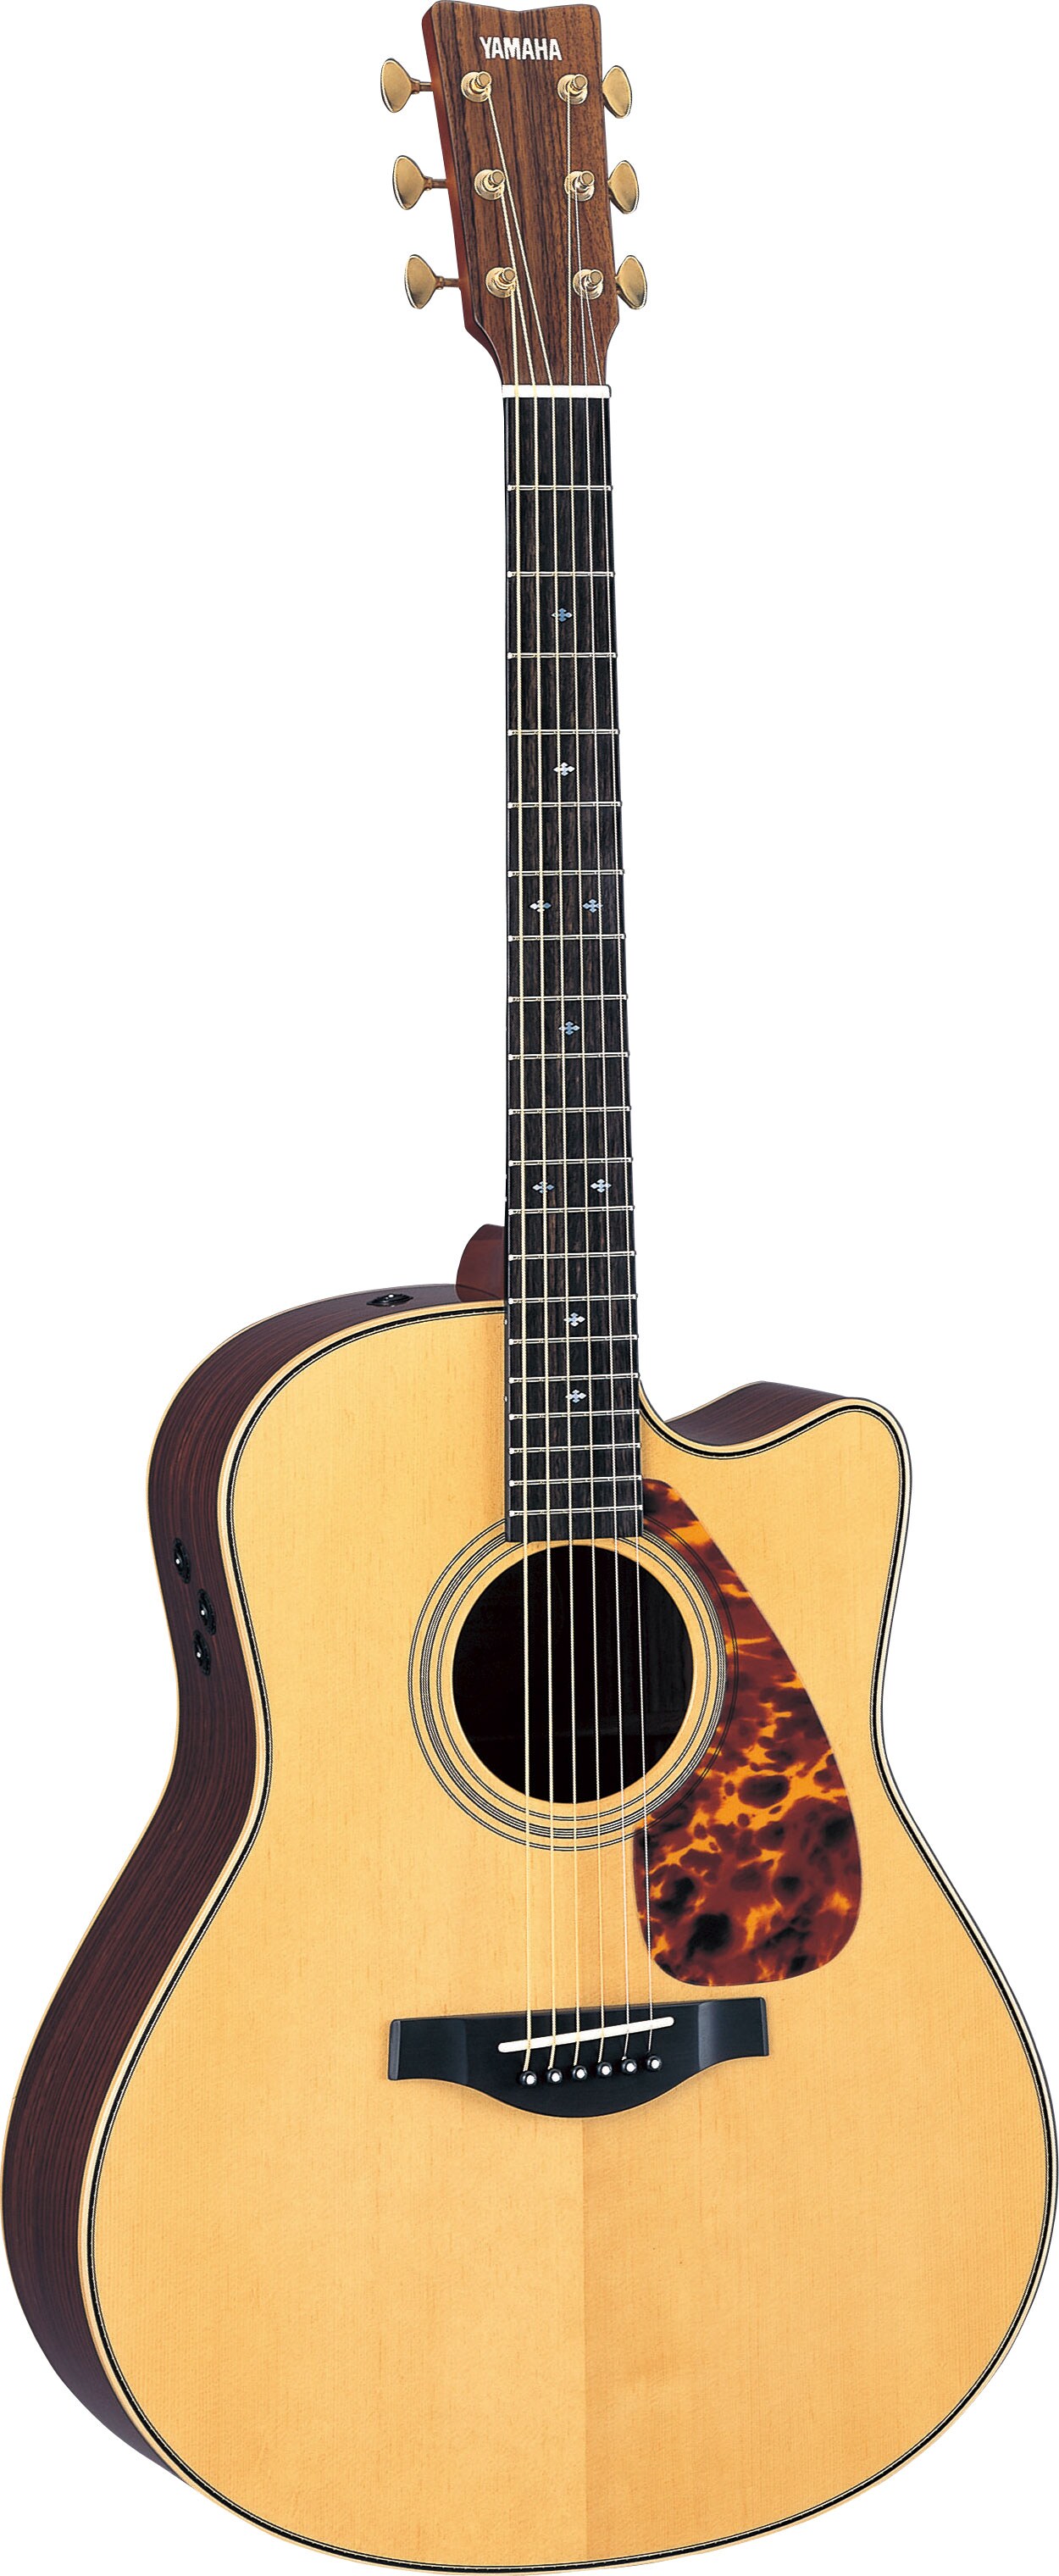 ヤマハ | LLX26C ARE(2009年モデル) - アコースティックギター - 概要